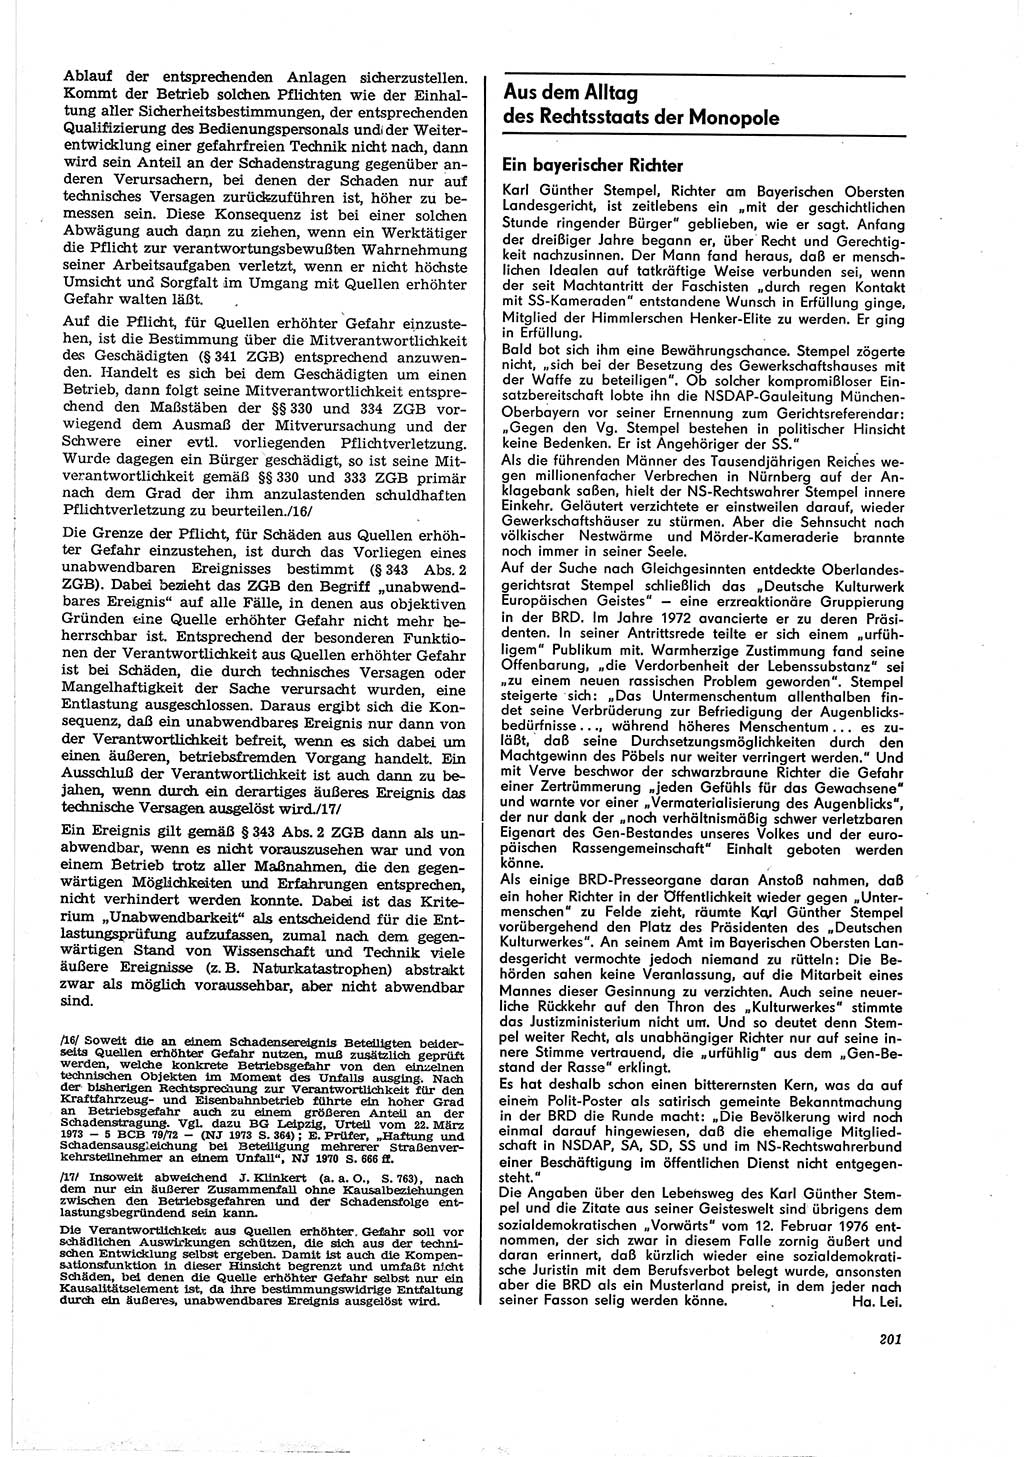 Neue Justiz (NJ), Zeitschrift für Recht und Rechtswissenschaft [Deutsche Demokratische Republik (DDR)], 30. Jahrgang 1976, Seite 201 (NJ DDR 1976, S. 201)